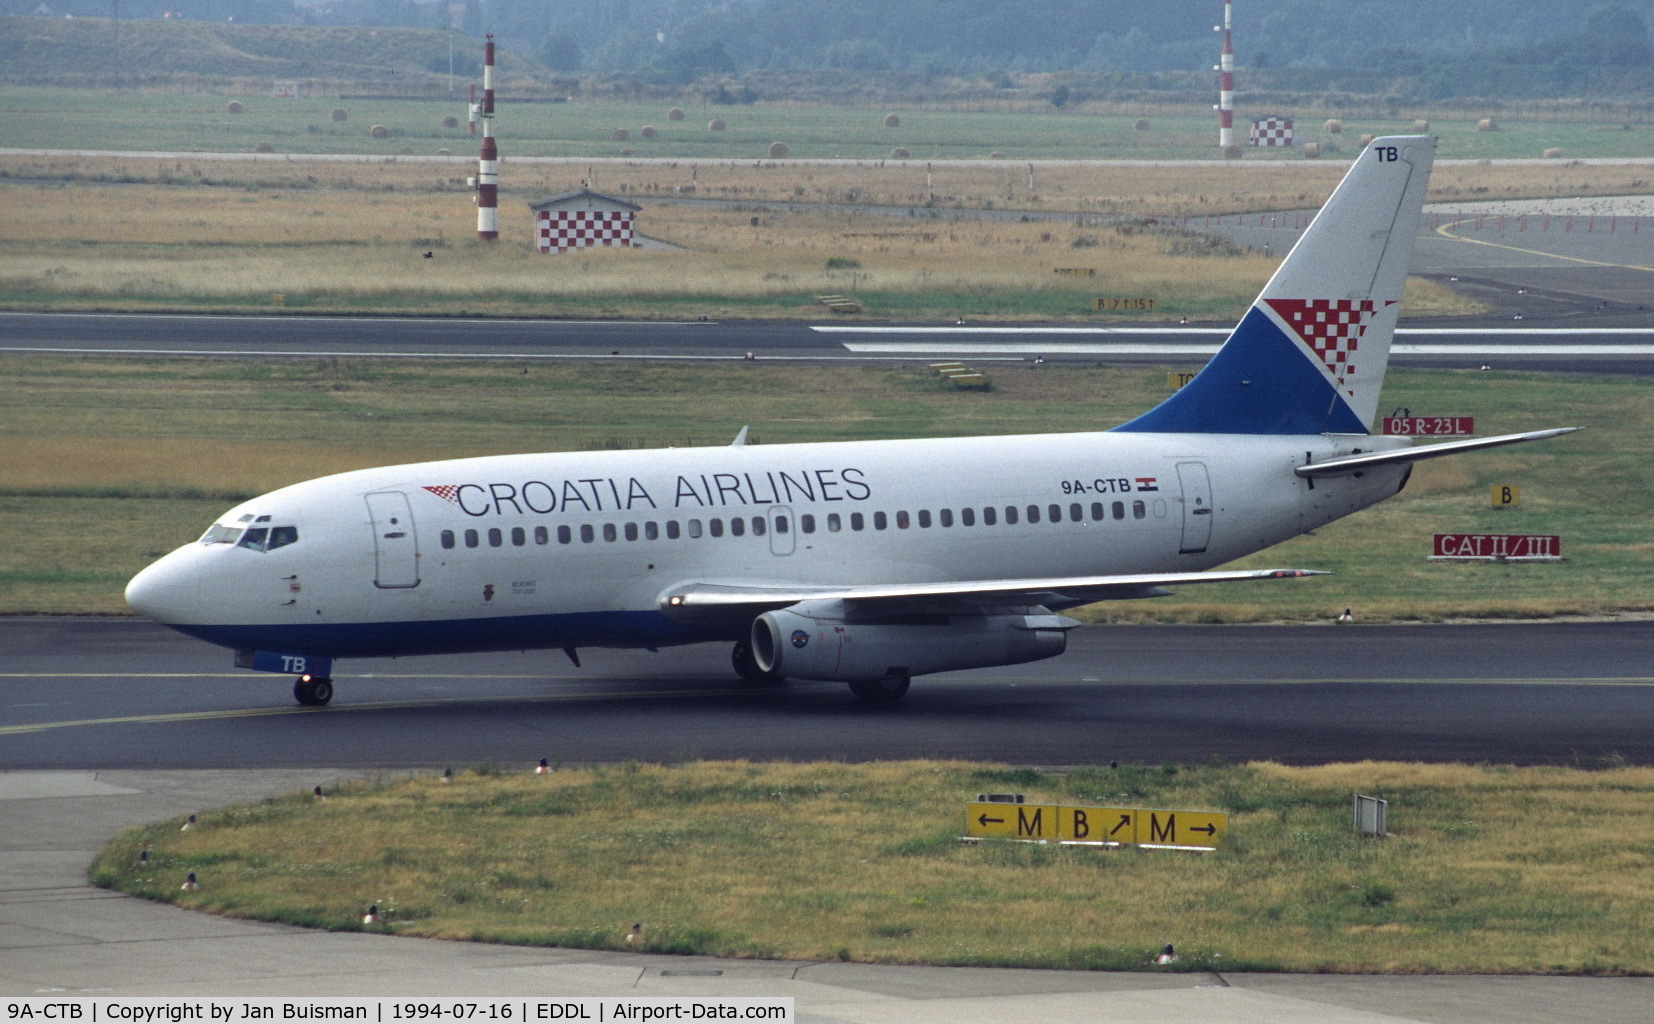 9A-CTB, 1980 Boeing 737-230 C/N 22116, Croatia Airlines